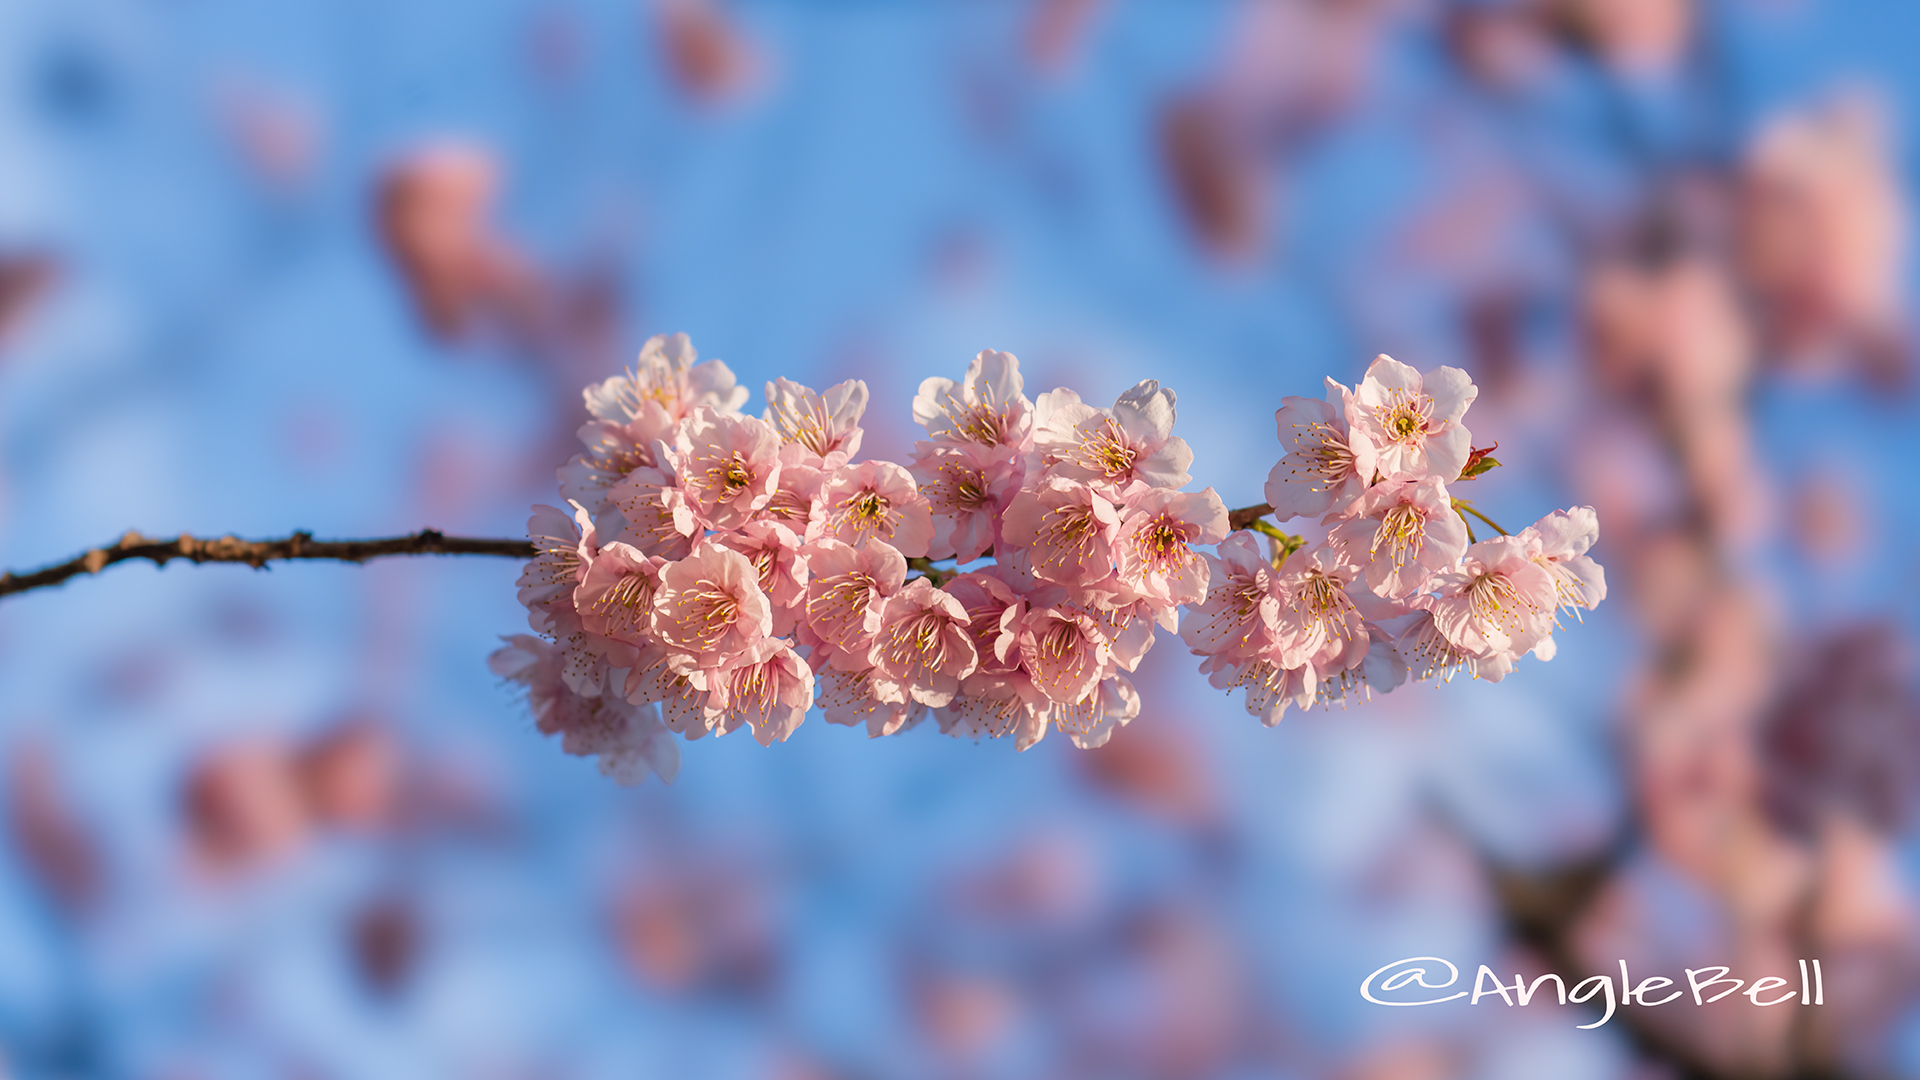 ツバキカンザクラ 椿寒桜 Flower Photo2019＿02